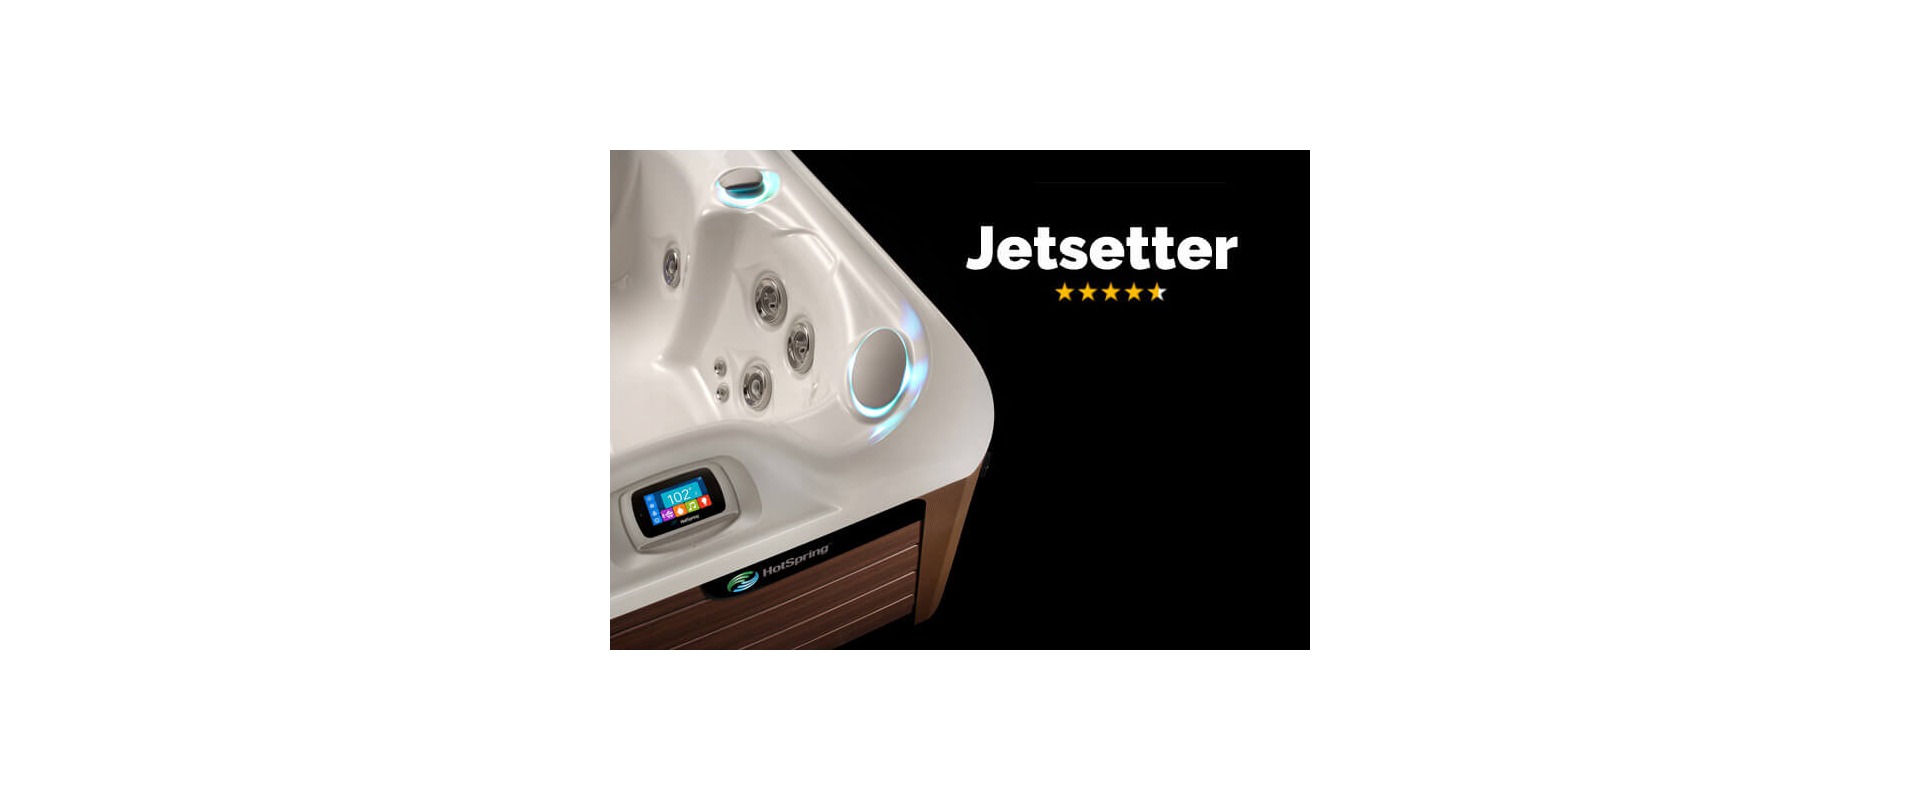 Jetsetter – niewielka wanna o wielkich możliwościach